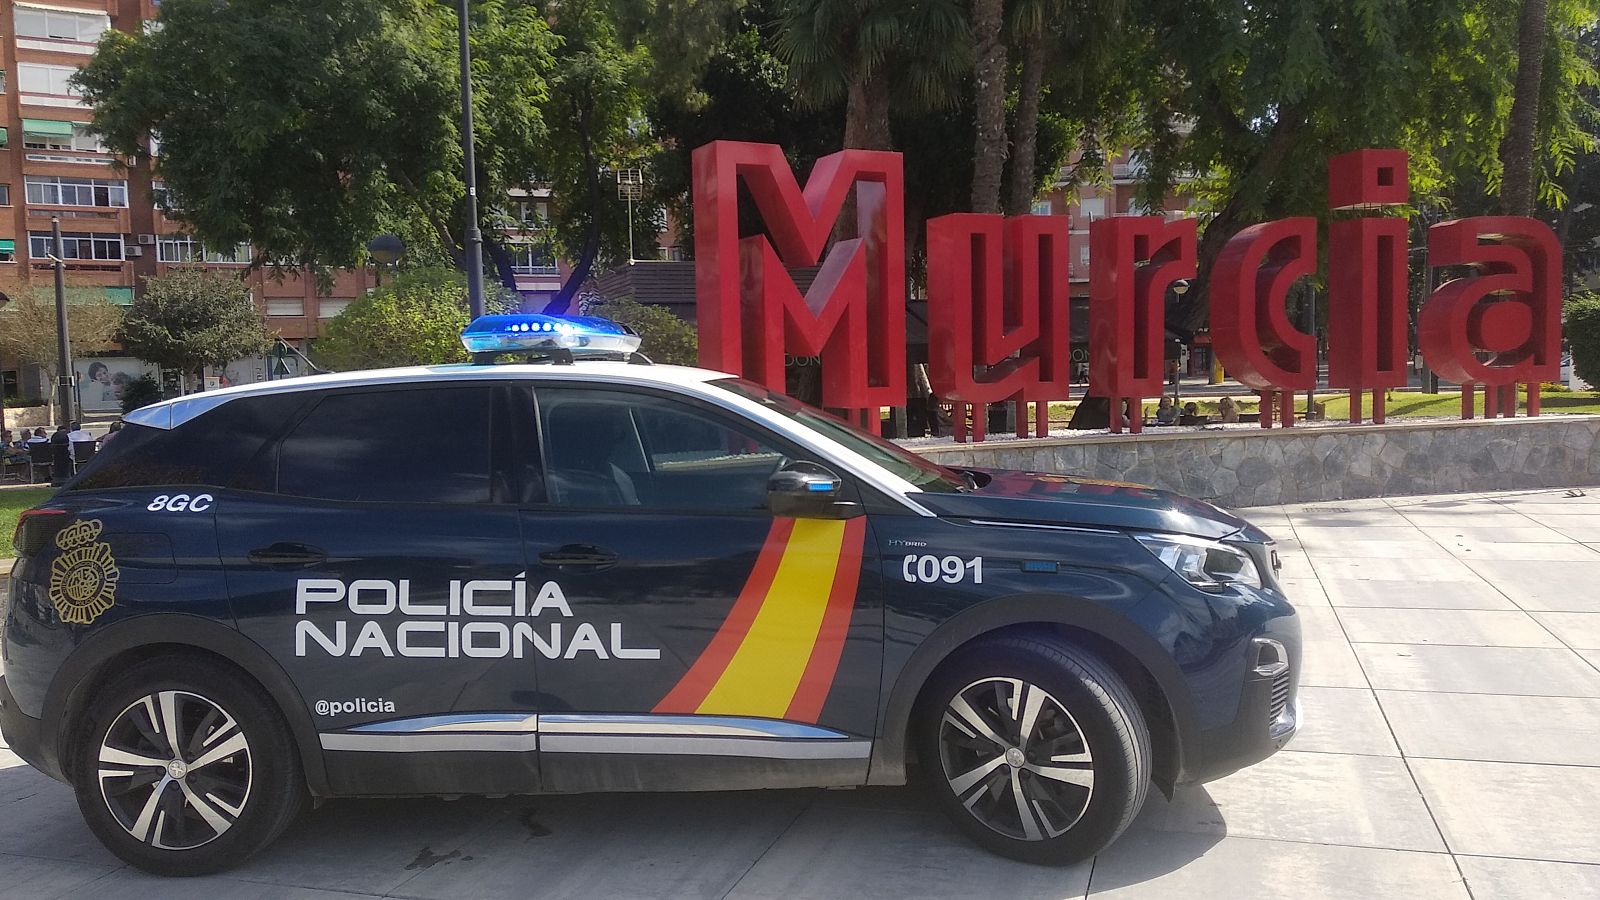 Vehículo de la Policia Nacional en la plaza Circular de Murcia. (EP)